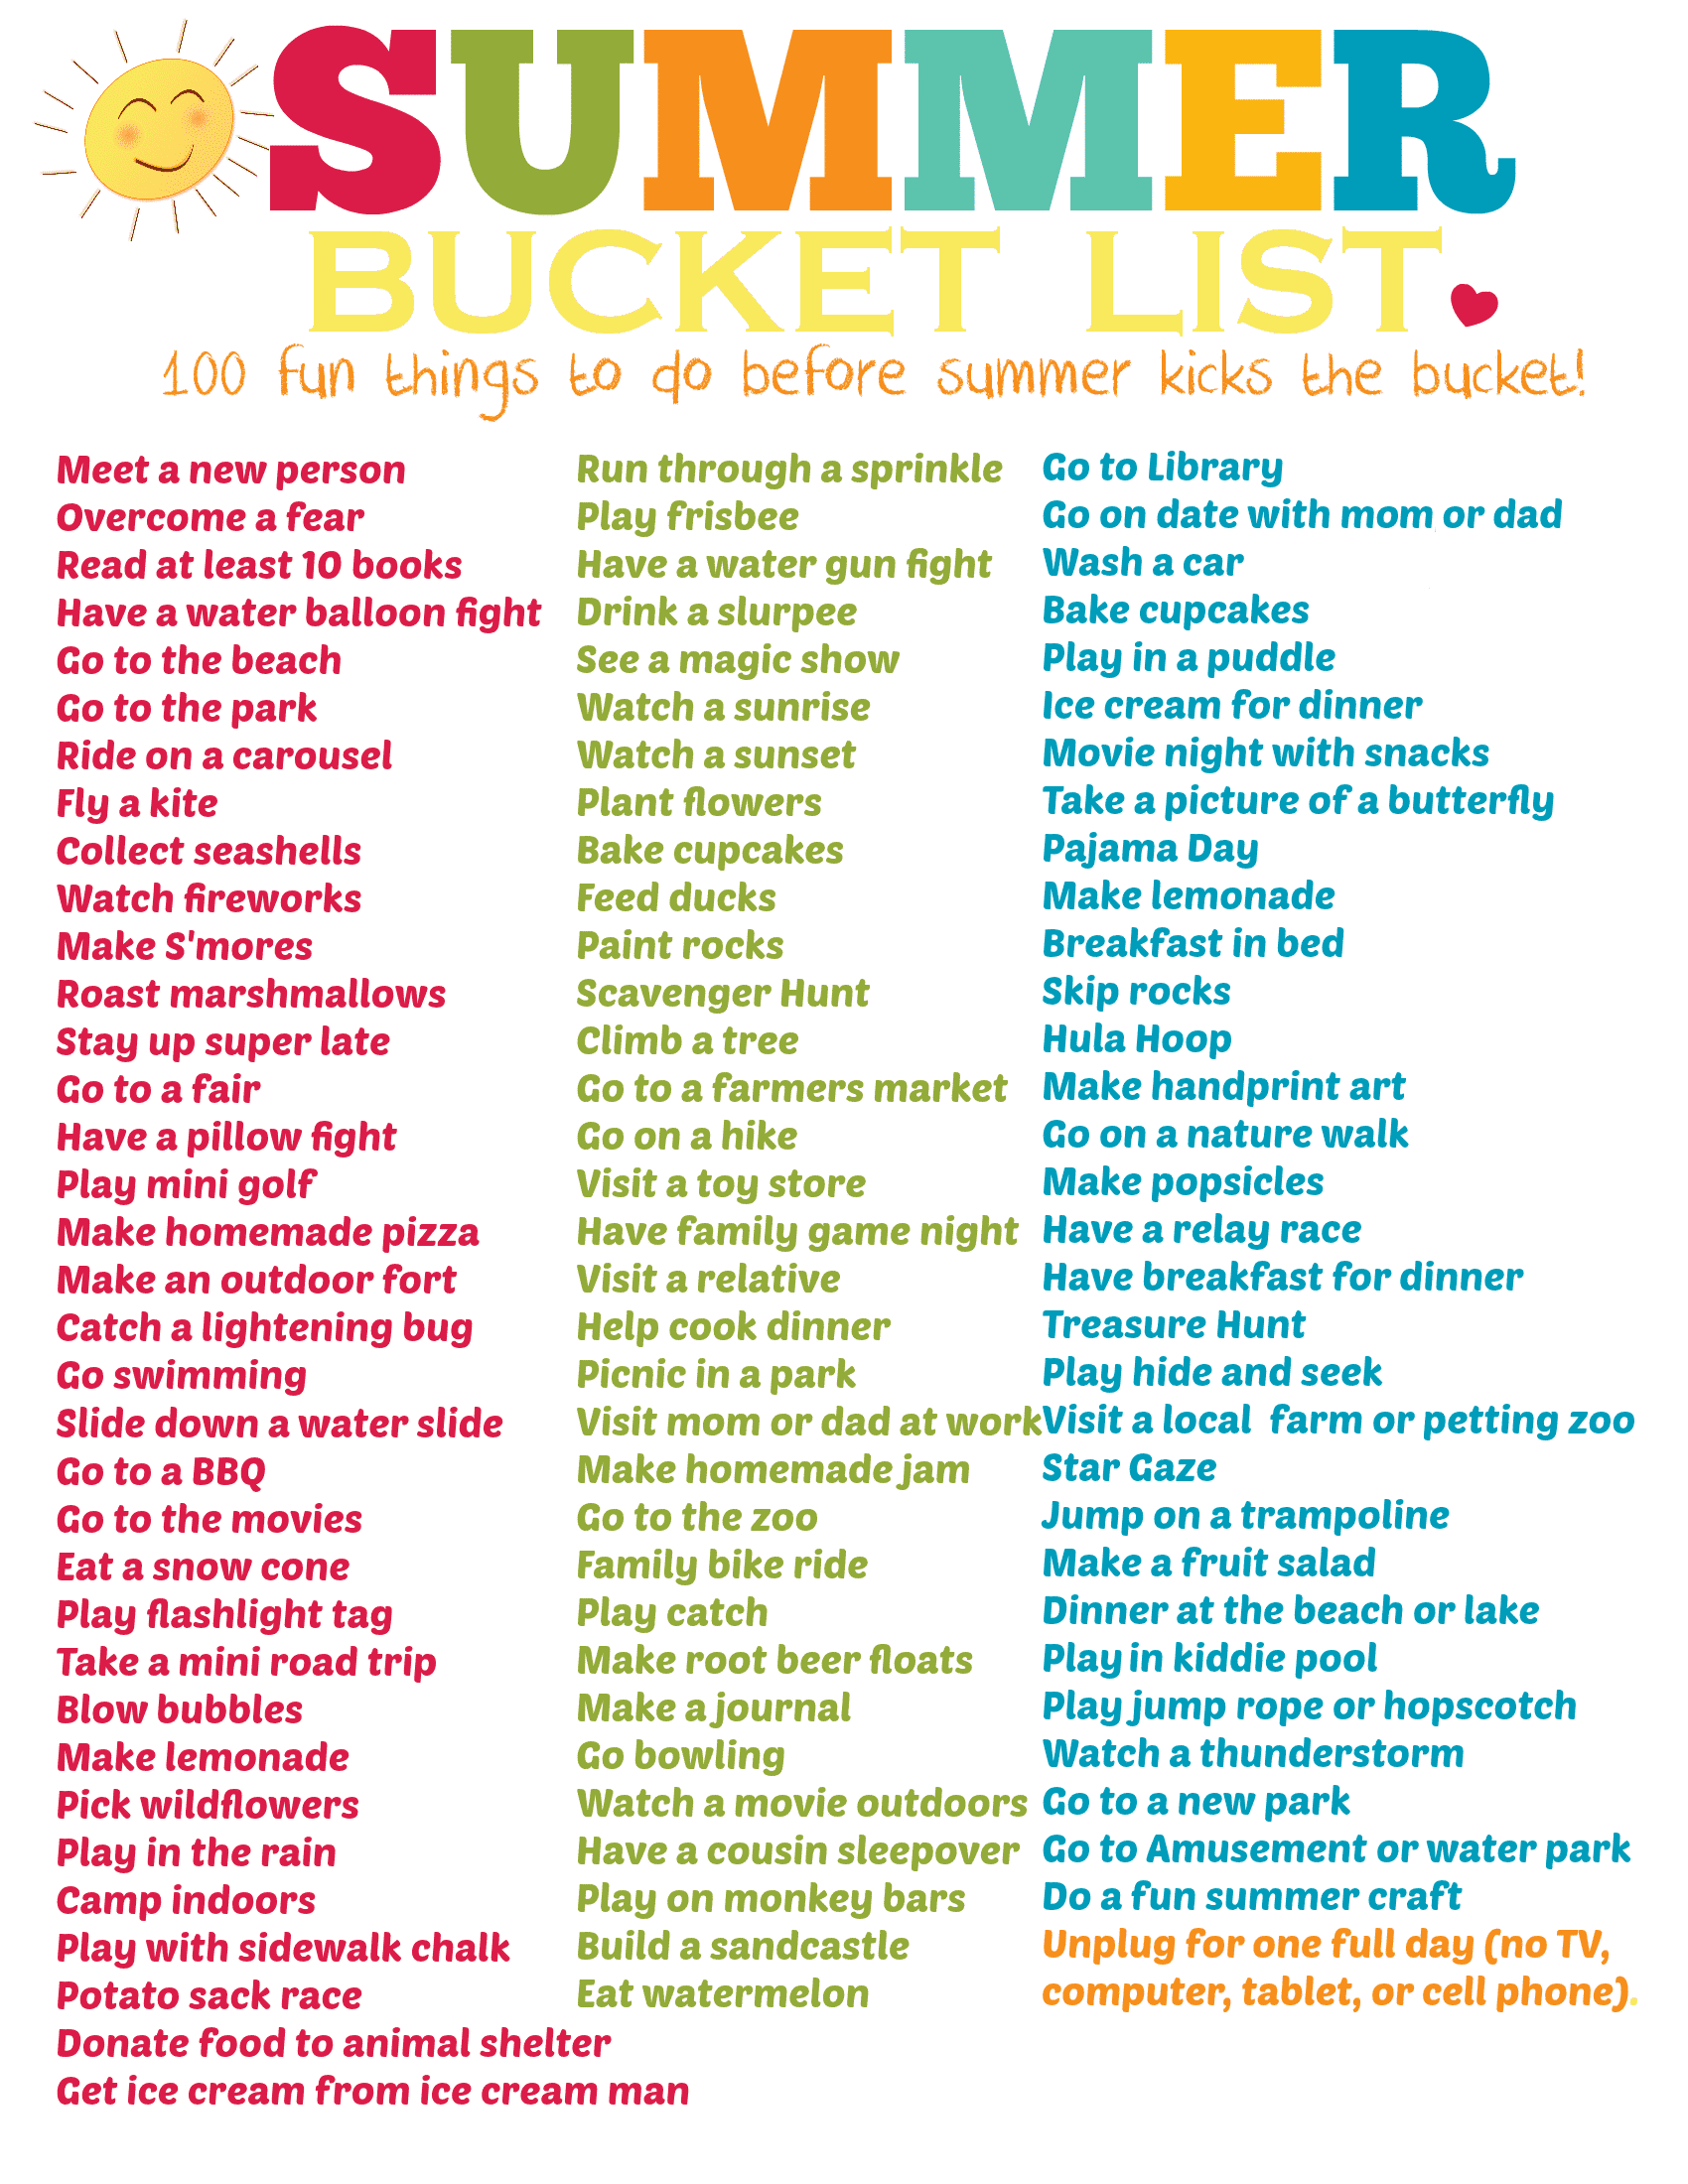 Summer Bucket List Final Image1 1 